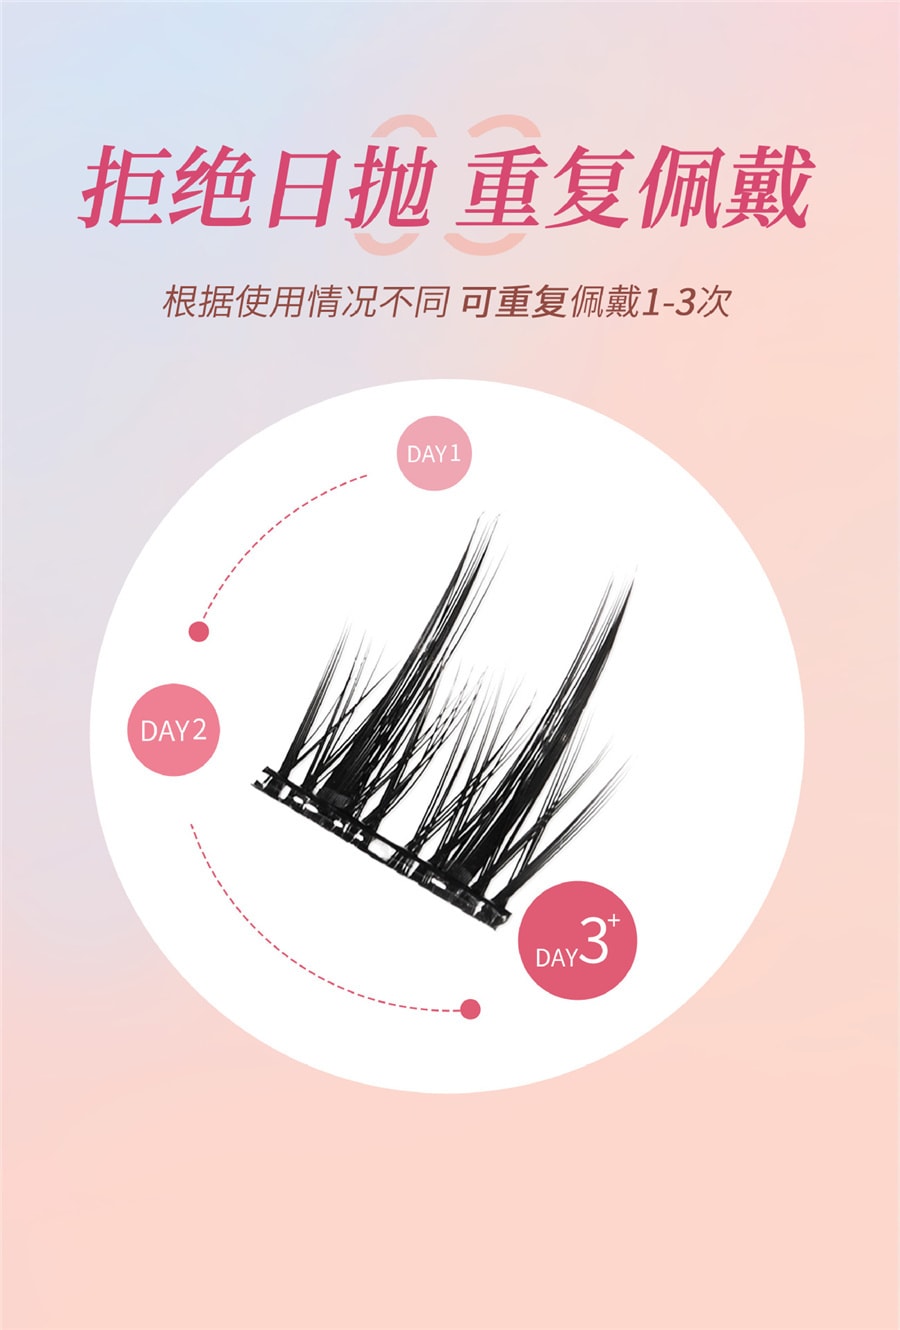 【中国直邮】BQI  免胶假睫毛 可重复使用 新手睫毛 - 猫系精灵 1盒丨*预计到达时间3-4周